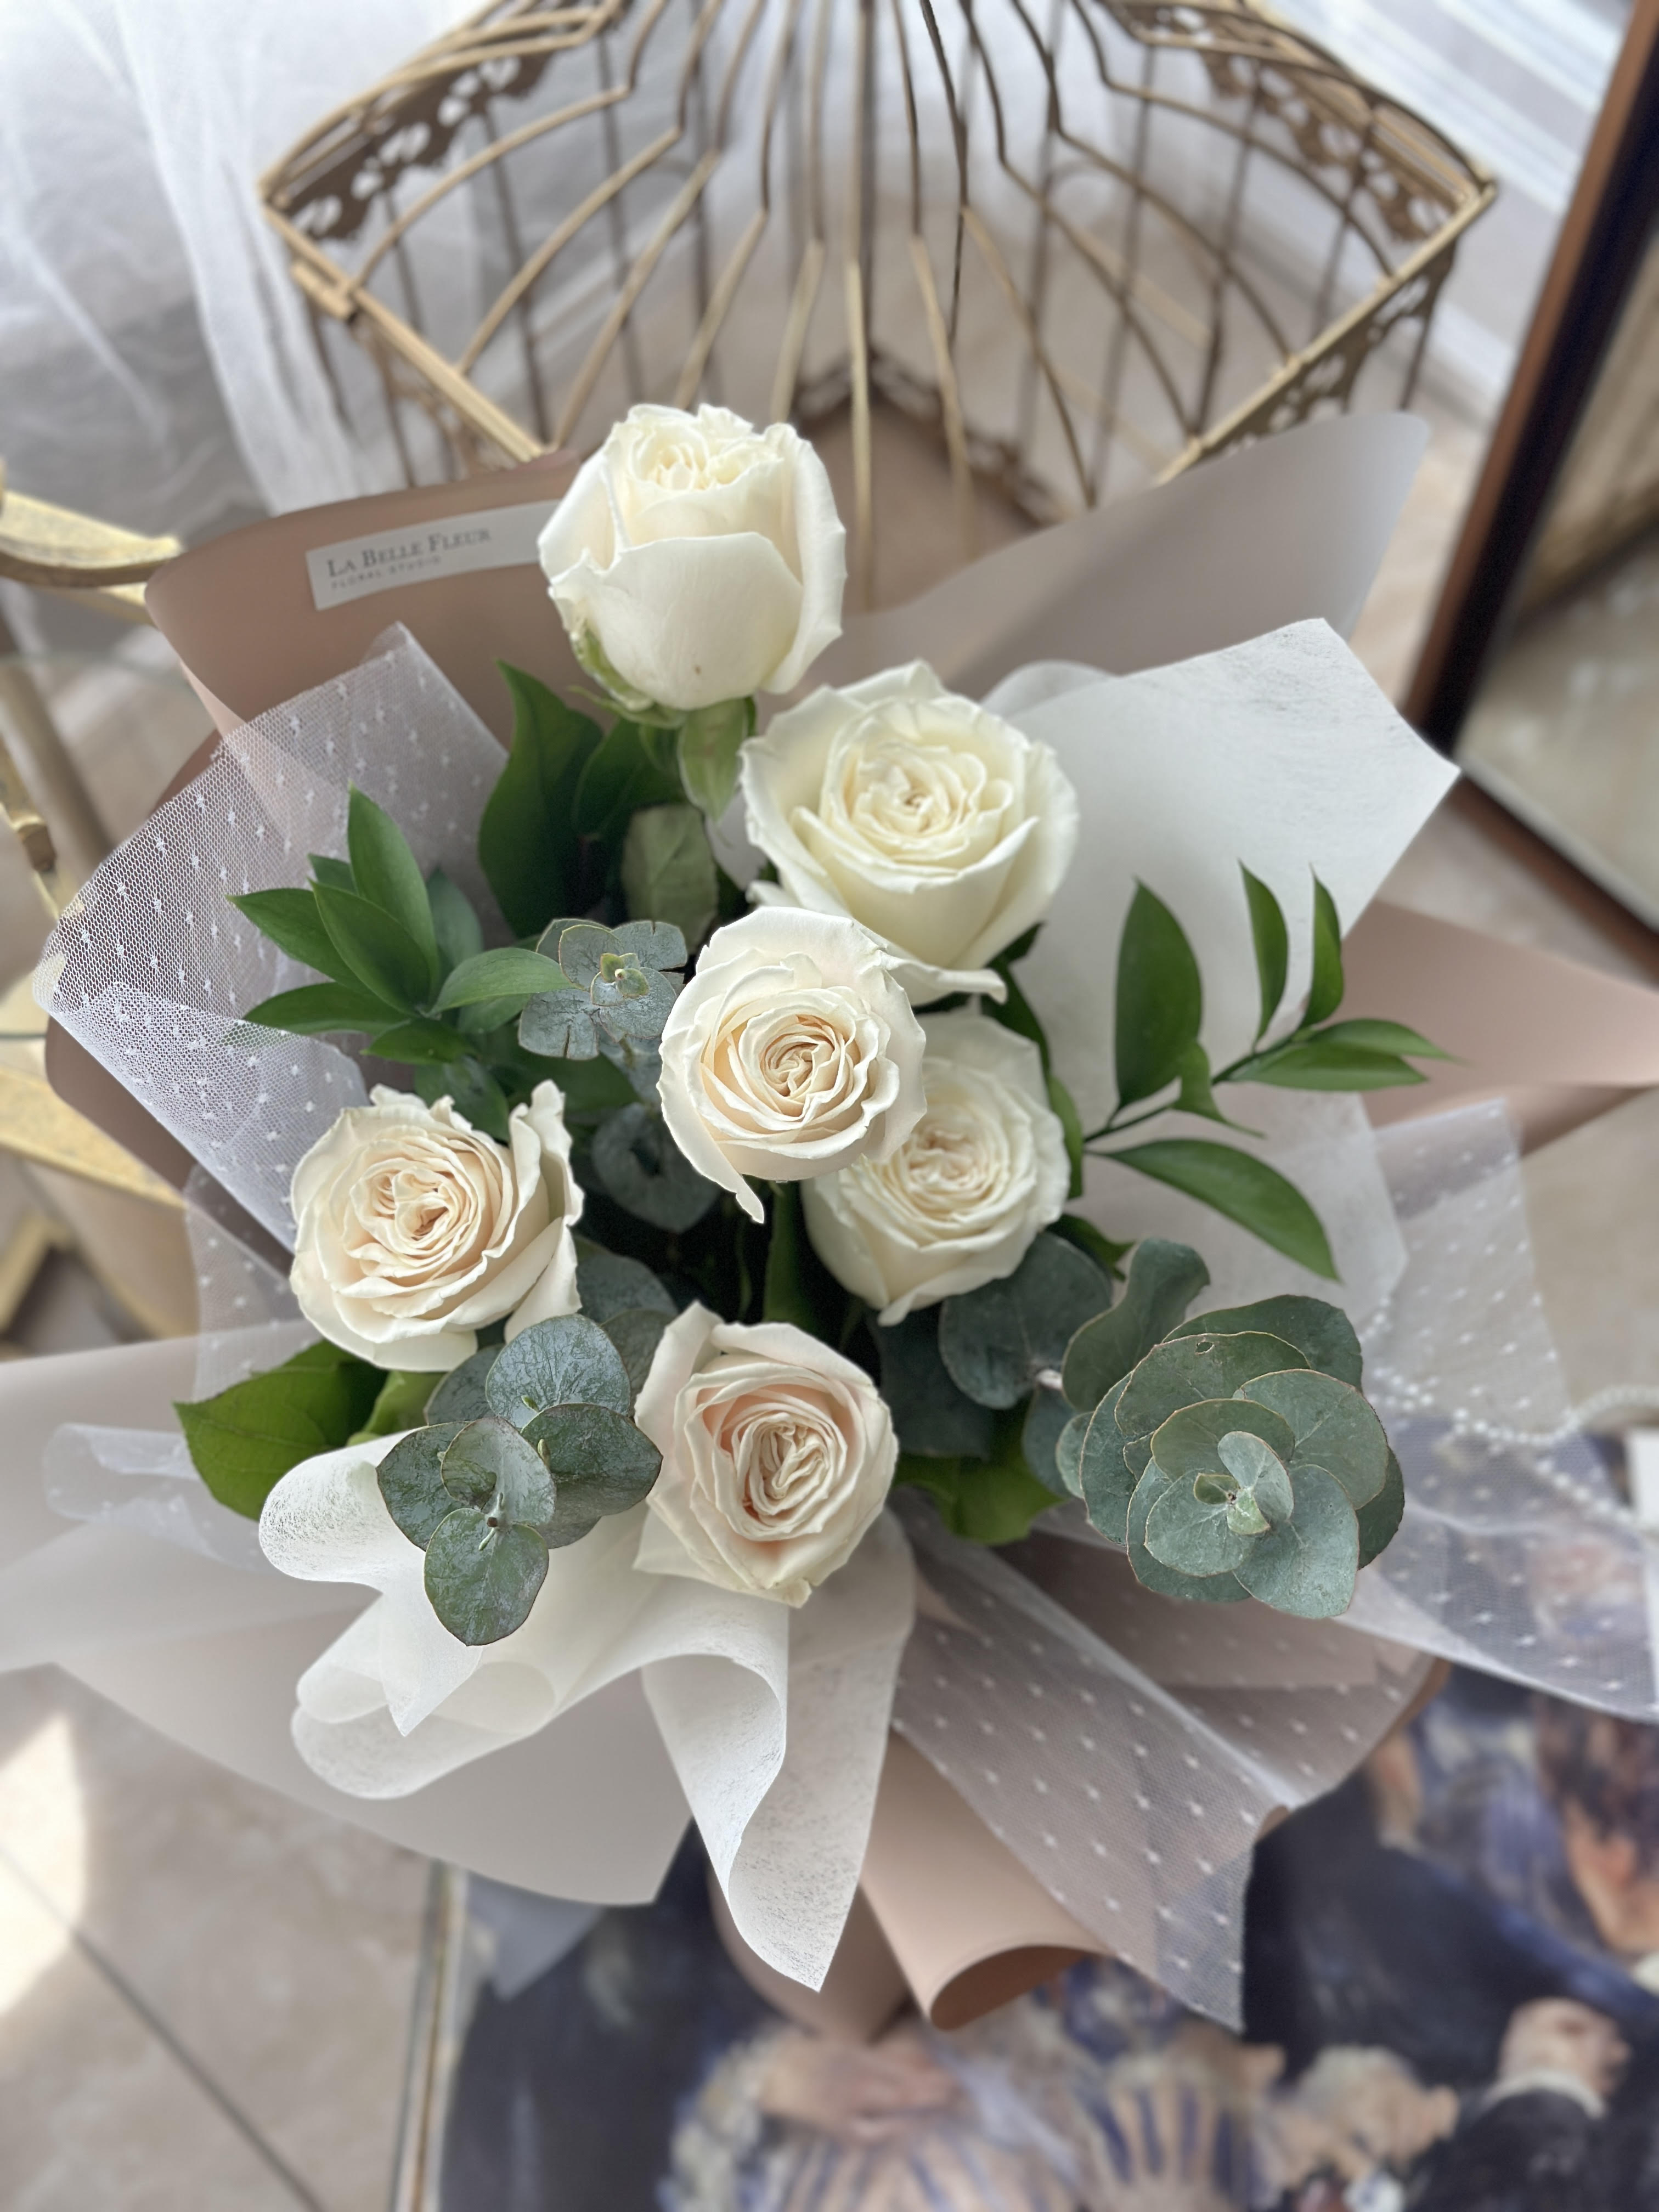 Elegant White Rose Flower Bouquet, La Belle Fleur